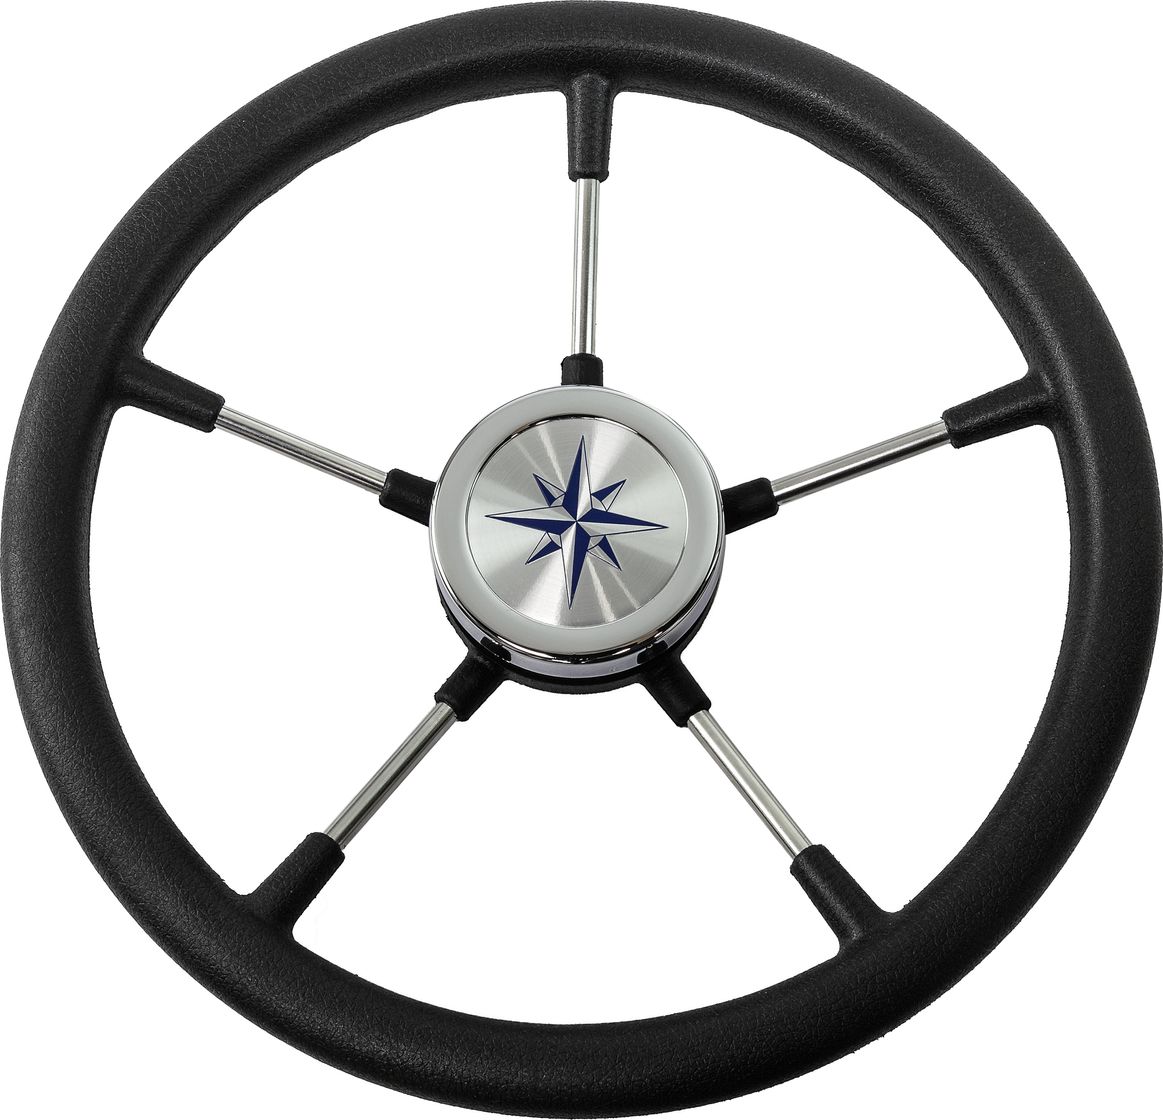 Рулевое колесо RIVA RSL обод черный, спицы серебряные д. 360 мм VN735022-01 гарнитура hama nhs p100 черный 2м накладные шейный обод 00139920 с микрофоном